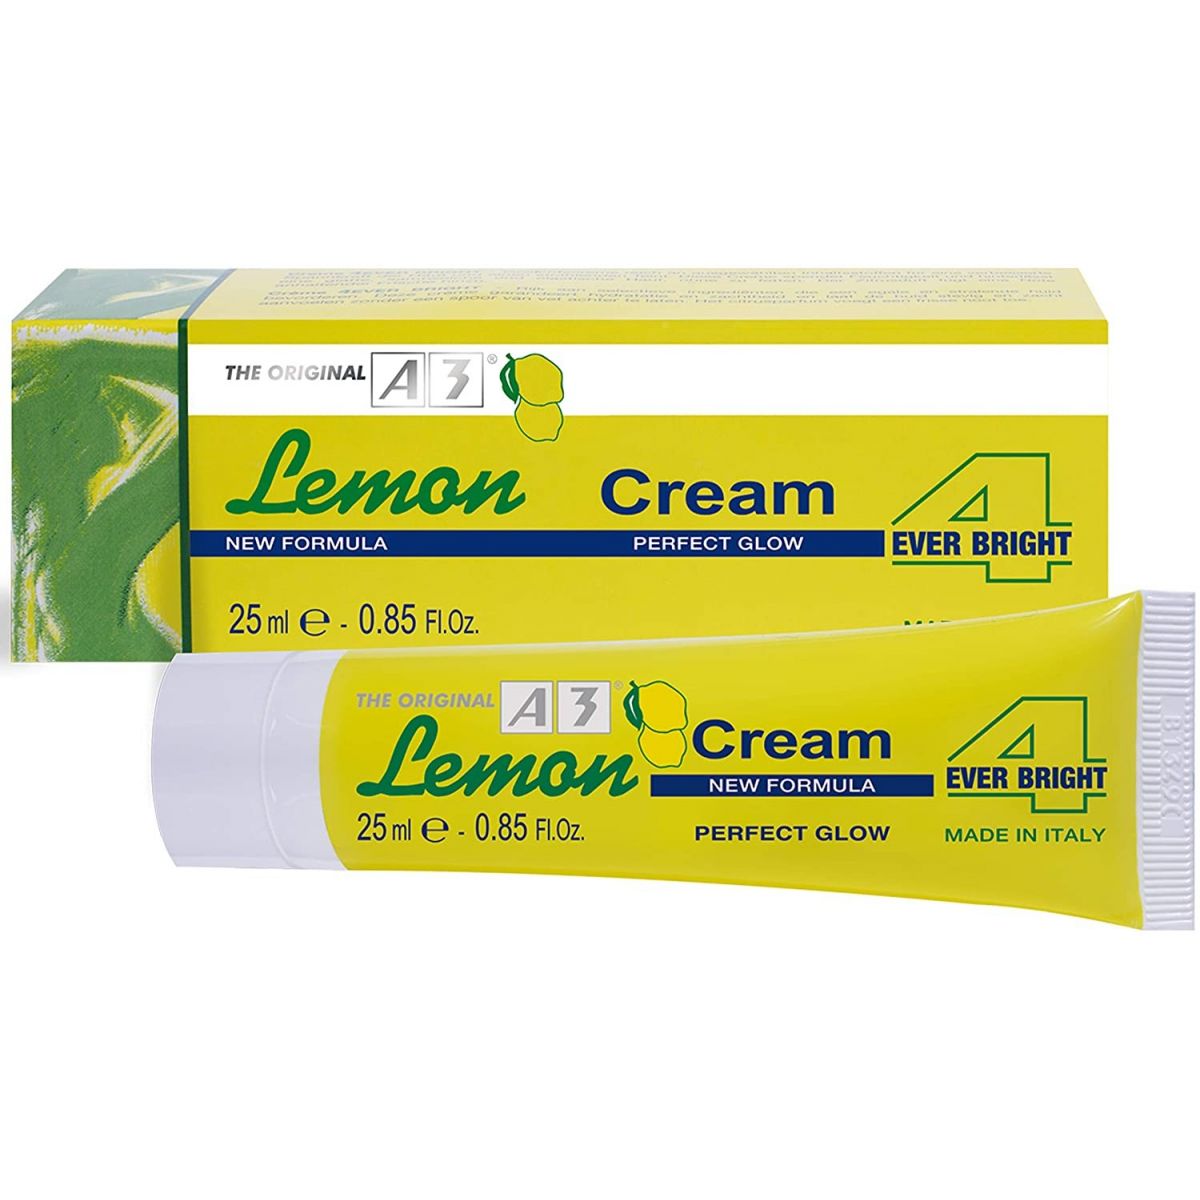 A3 Lemon Cream 4 siempre brillante 25 ml